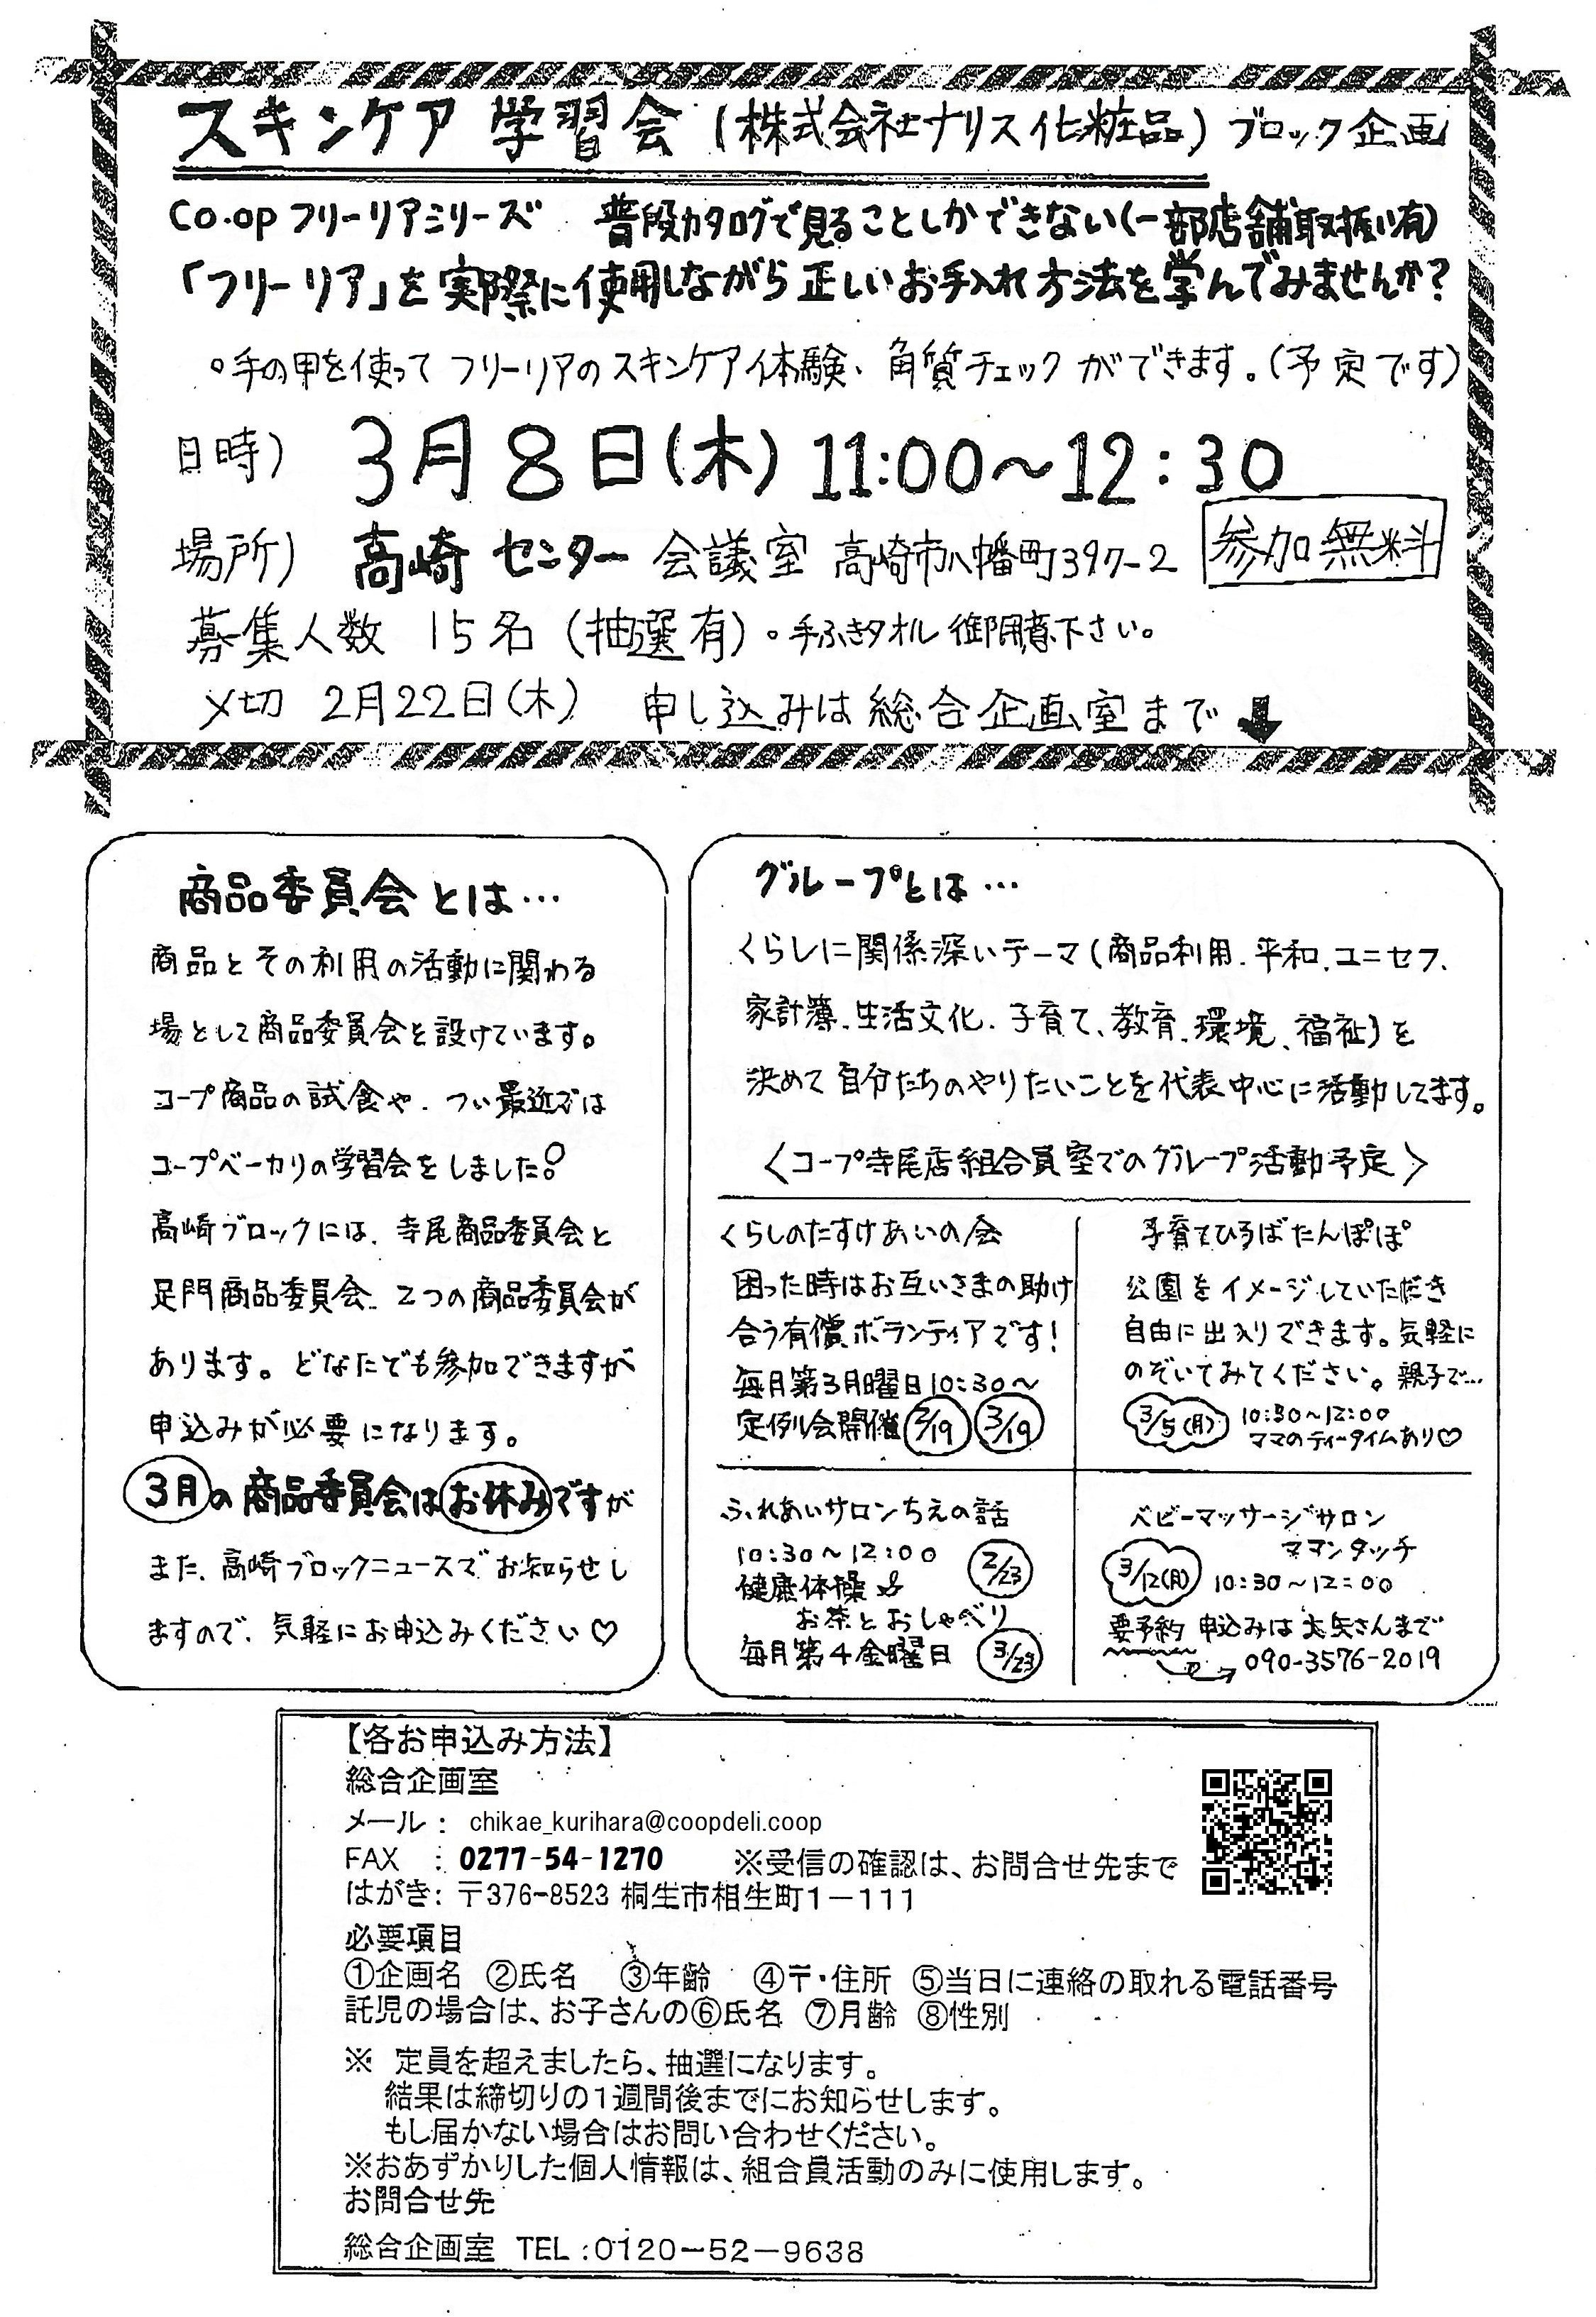 https://gunma.coopnet.or.jp/event/ev/ev_info/img/1802_b9_news_02.jpg